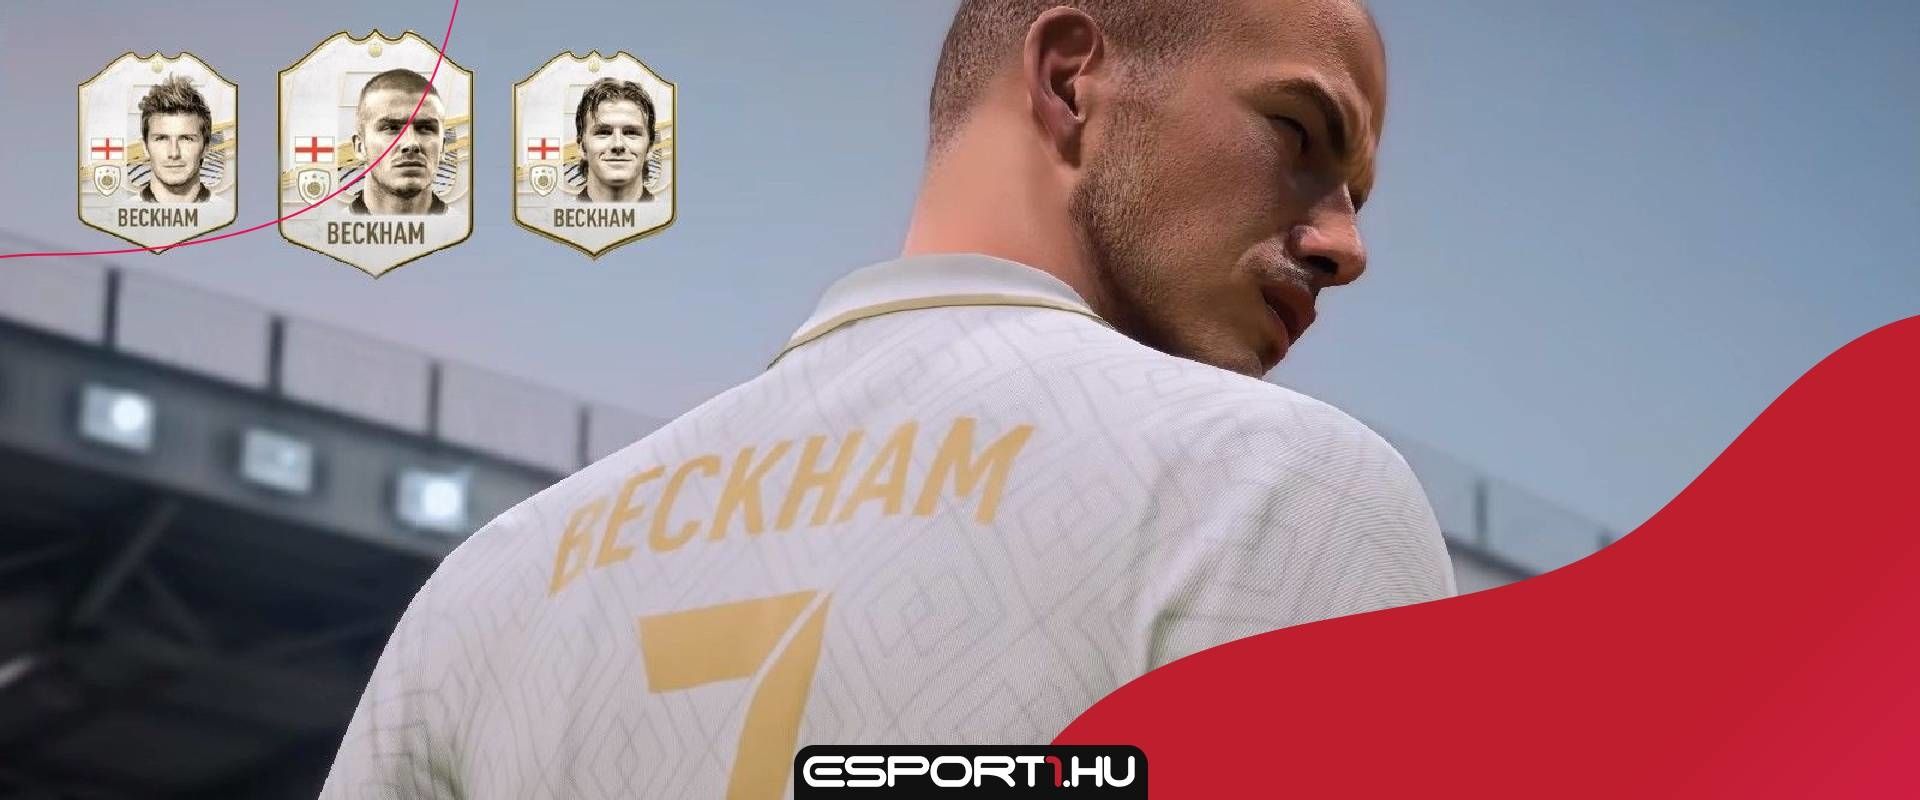 Irdatlan összeget kap Beckham a FIFA 21-ben való megjelenésért